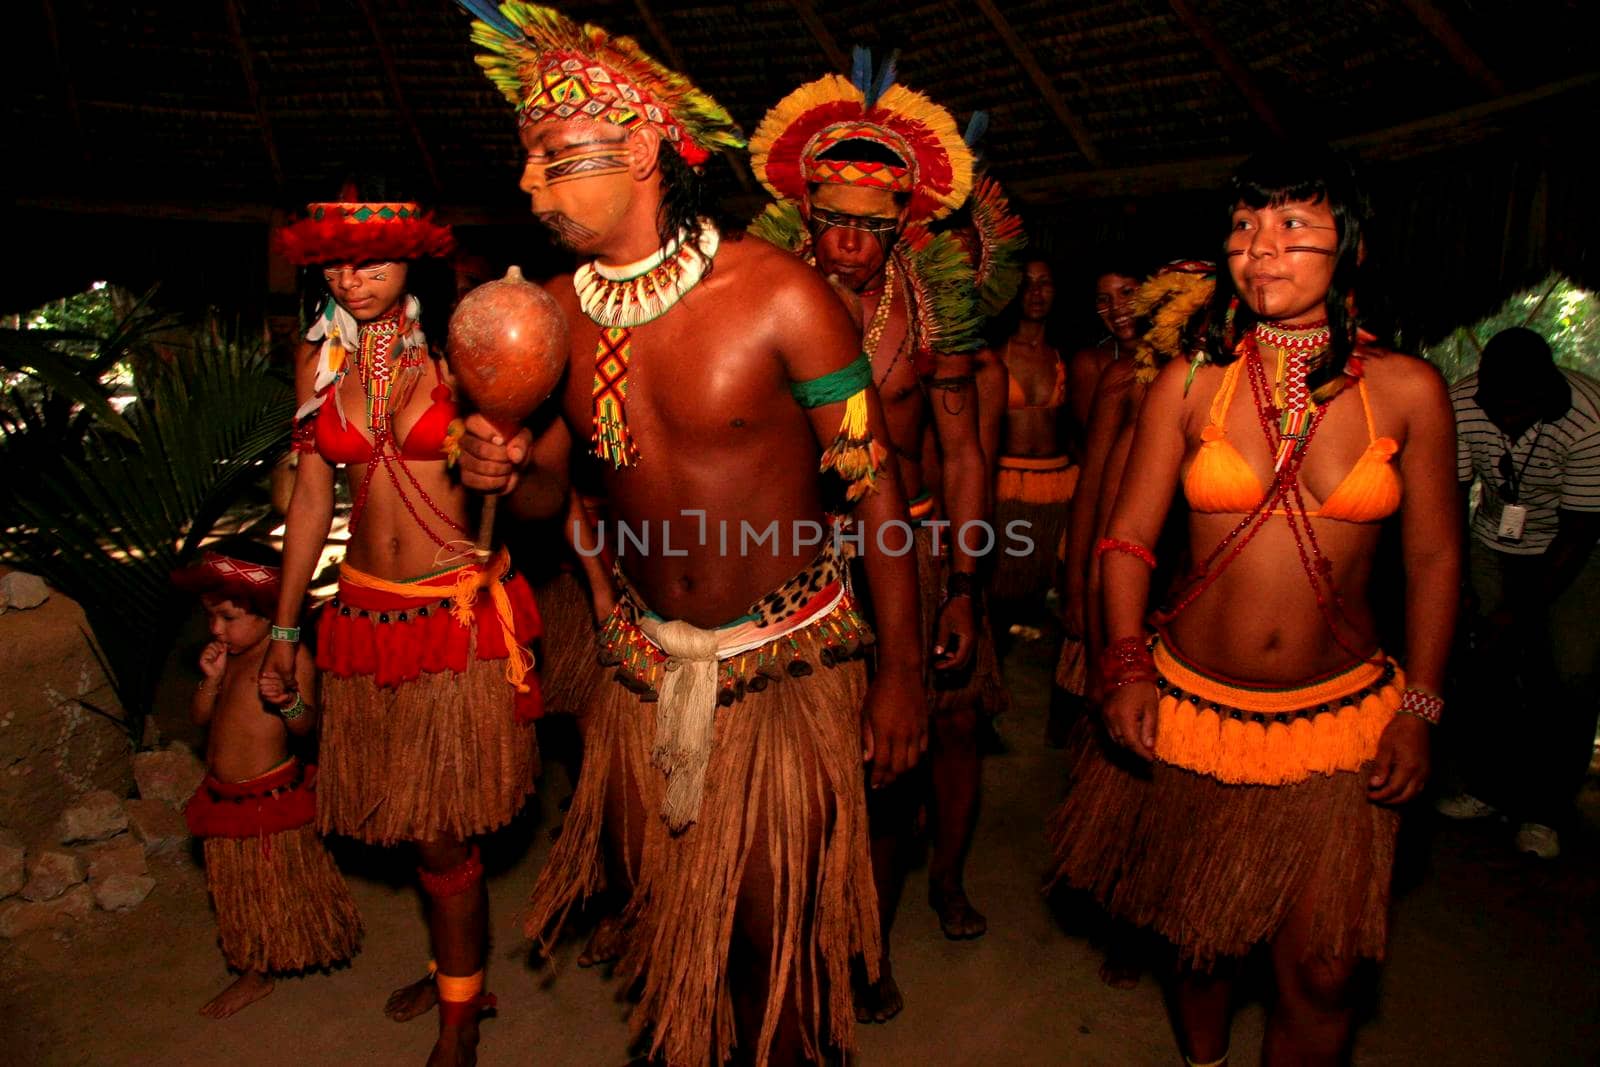 indian pataxos in the jackfruit village by joasouza